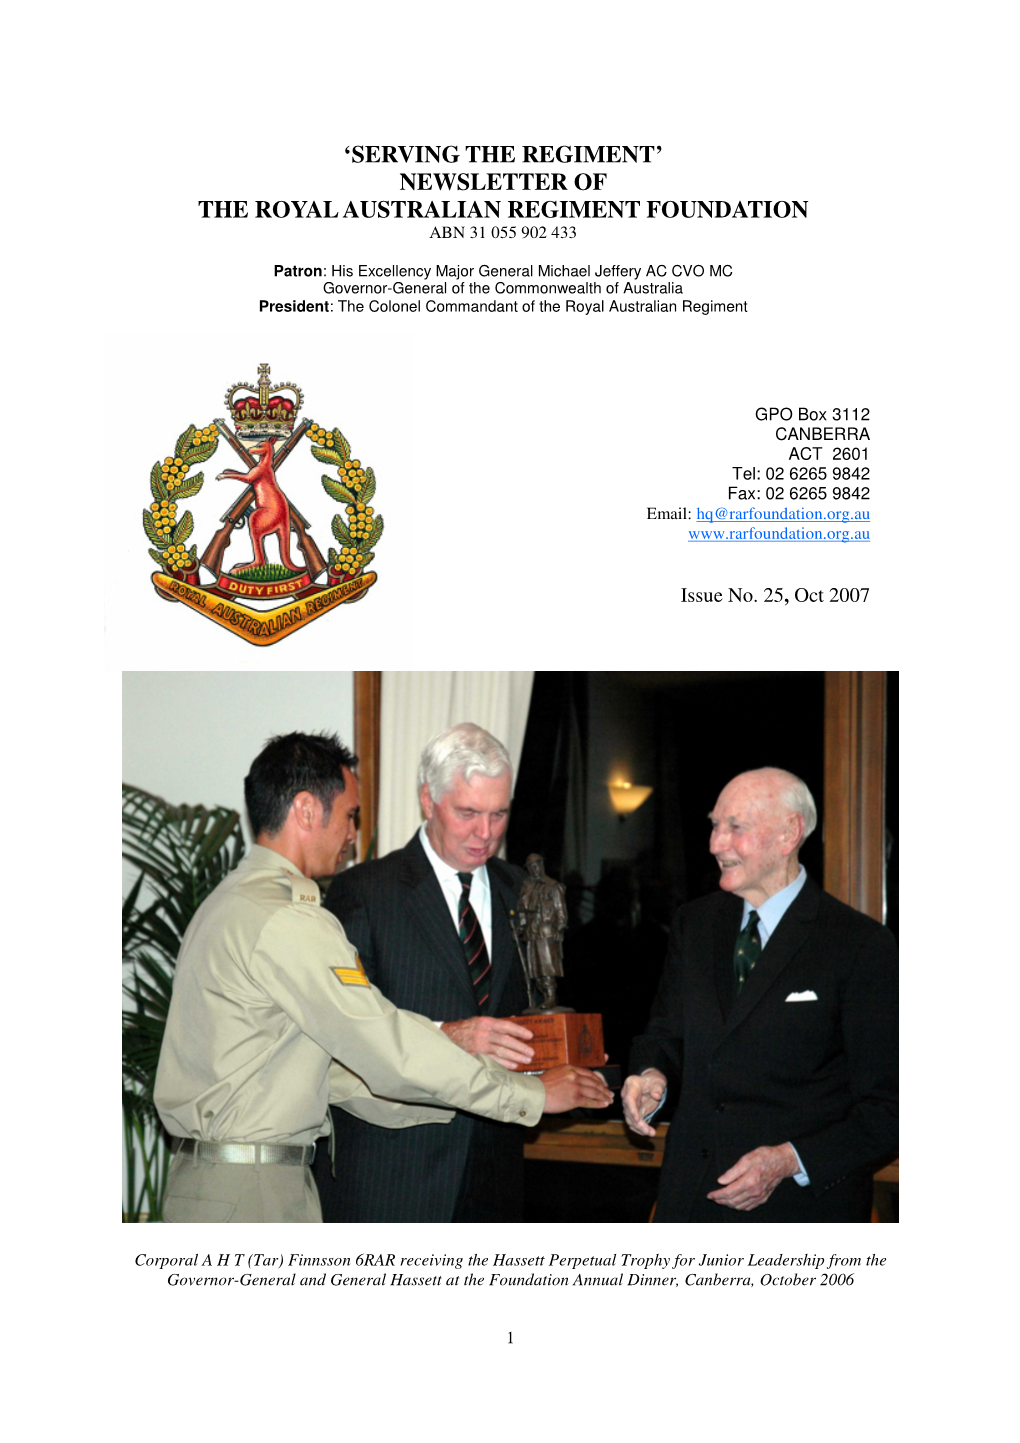 Newsletter of the Royal Australian Regiment Foundation Abn 31 055 902 433